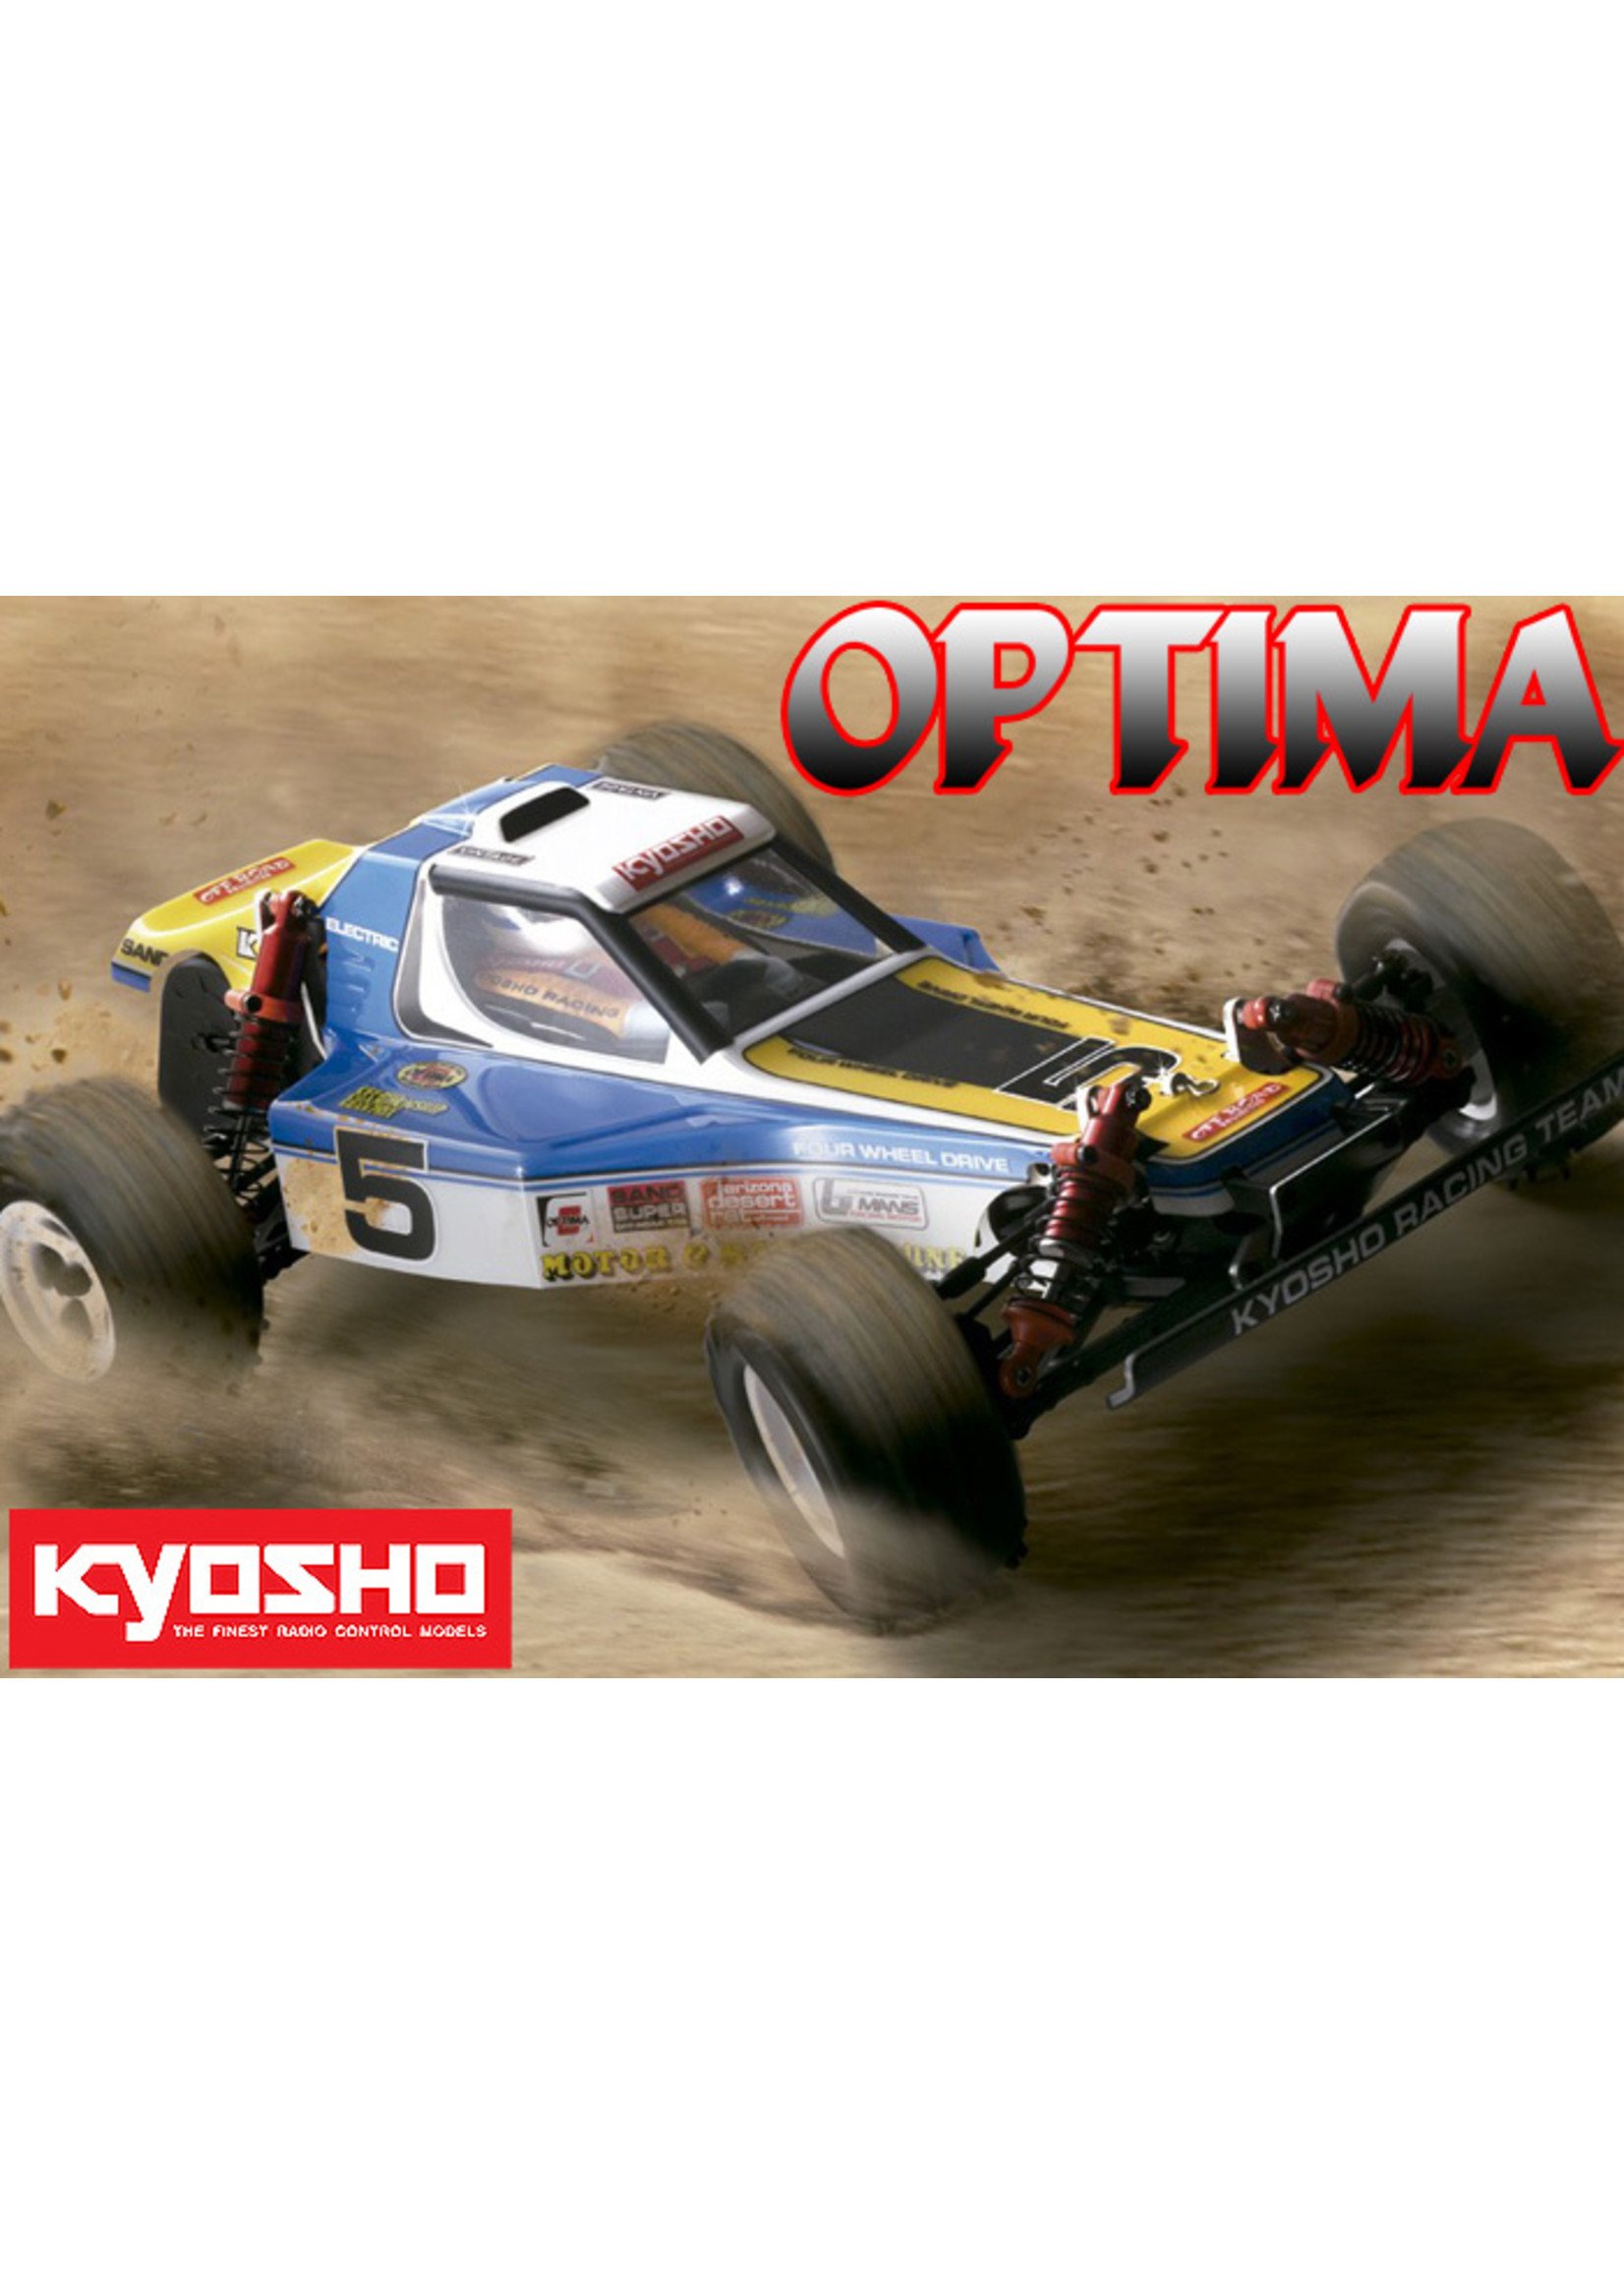 Kyosho 1/10 Optima 4WD Buggy Kit